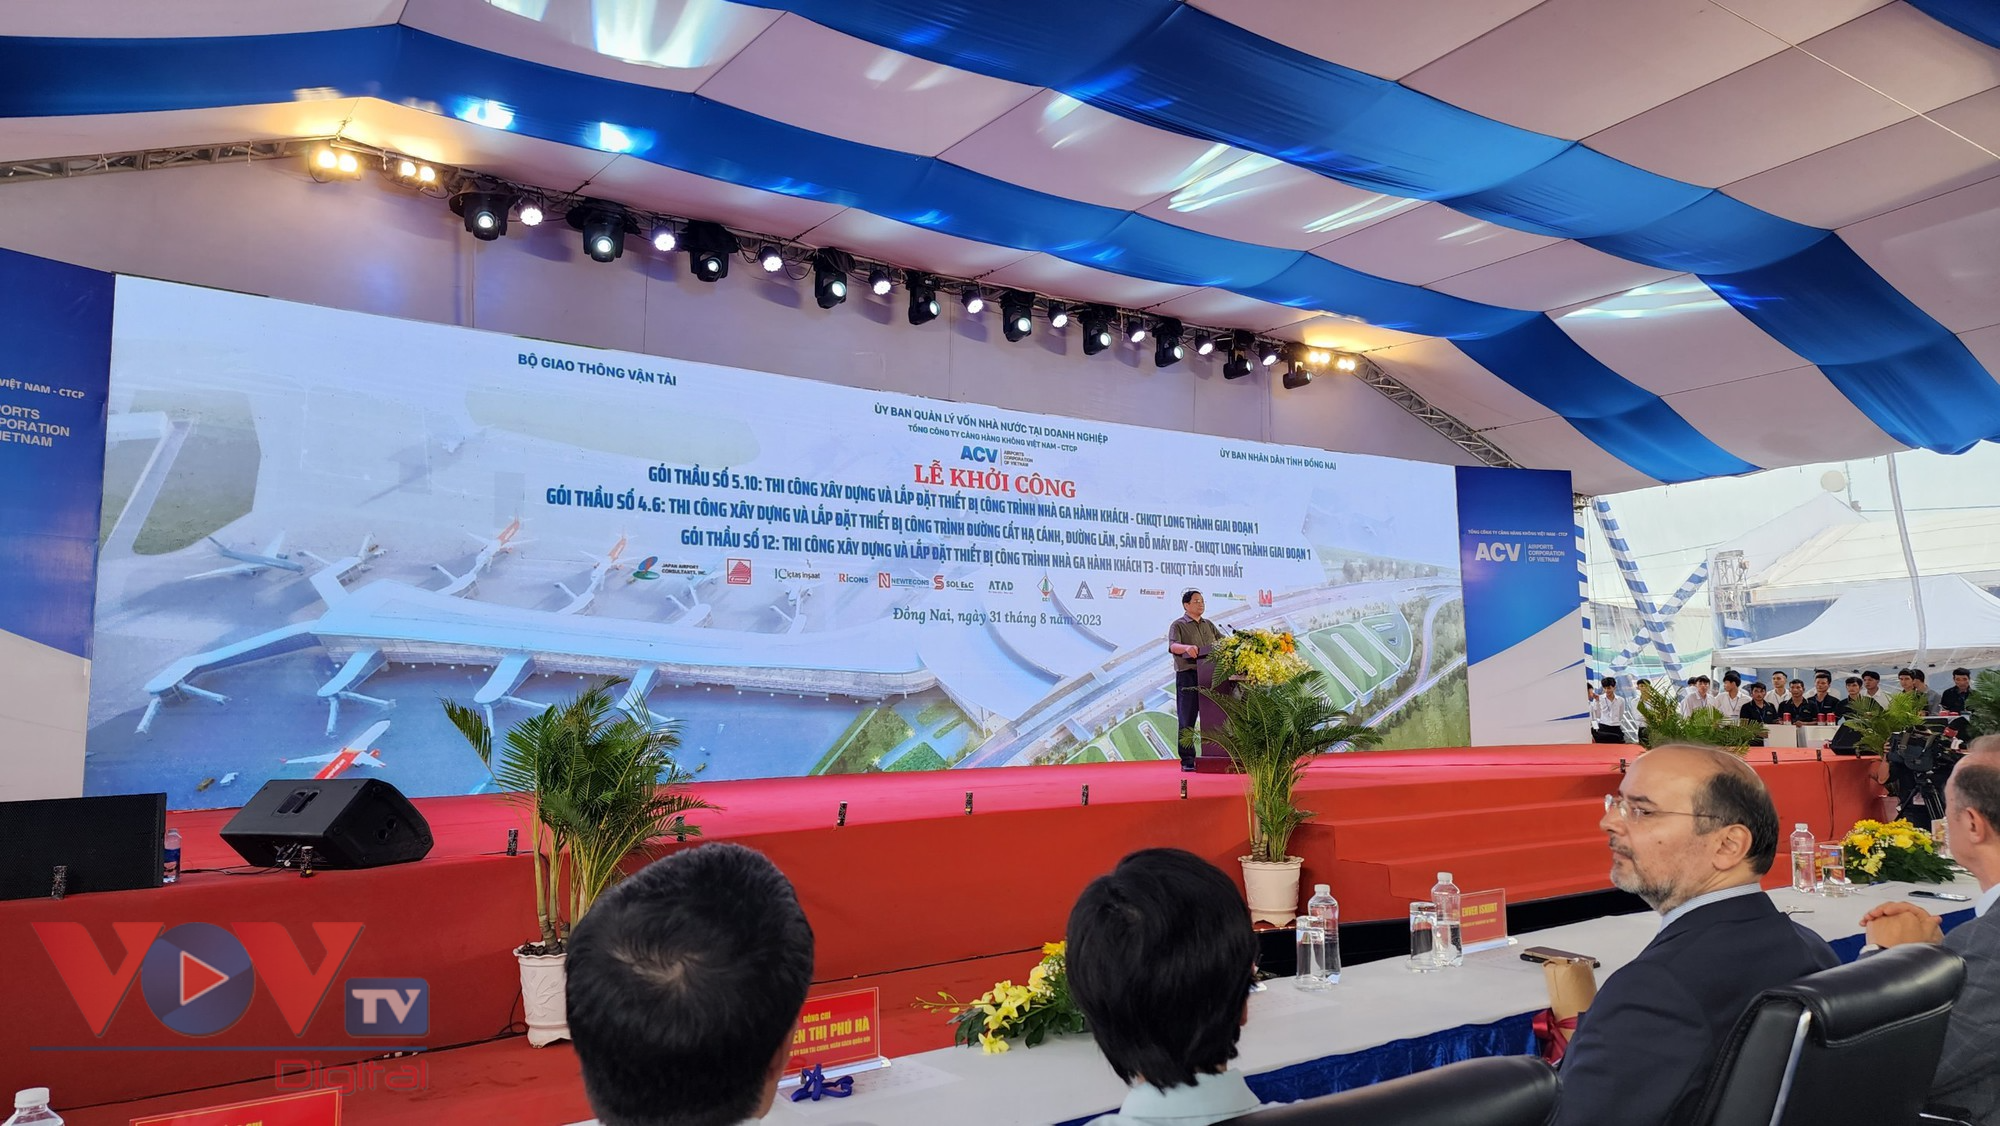 Thủ tướng Phạm Minh Chính dự lễ khởi công Cảng hàng không quốc tế Long Thành và Nhà ga T3 Cảng hàng không quốc tế Tân Sơn Nhất  - Ảnh 1.